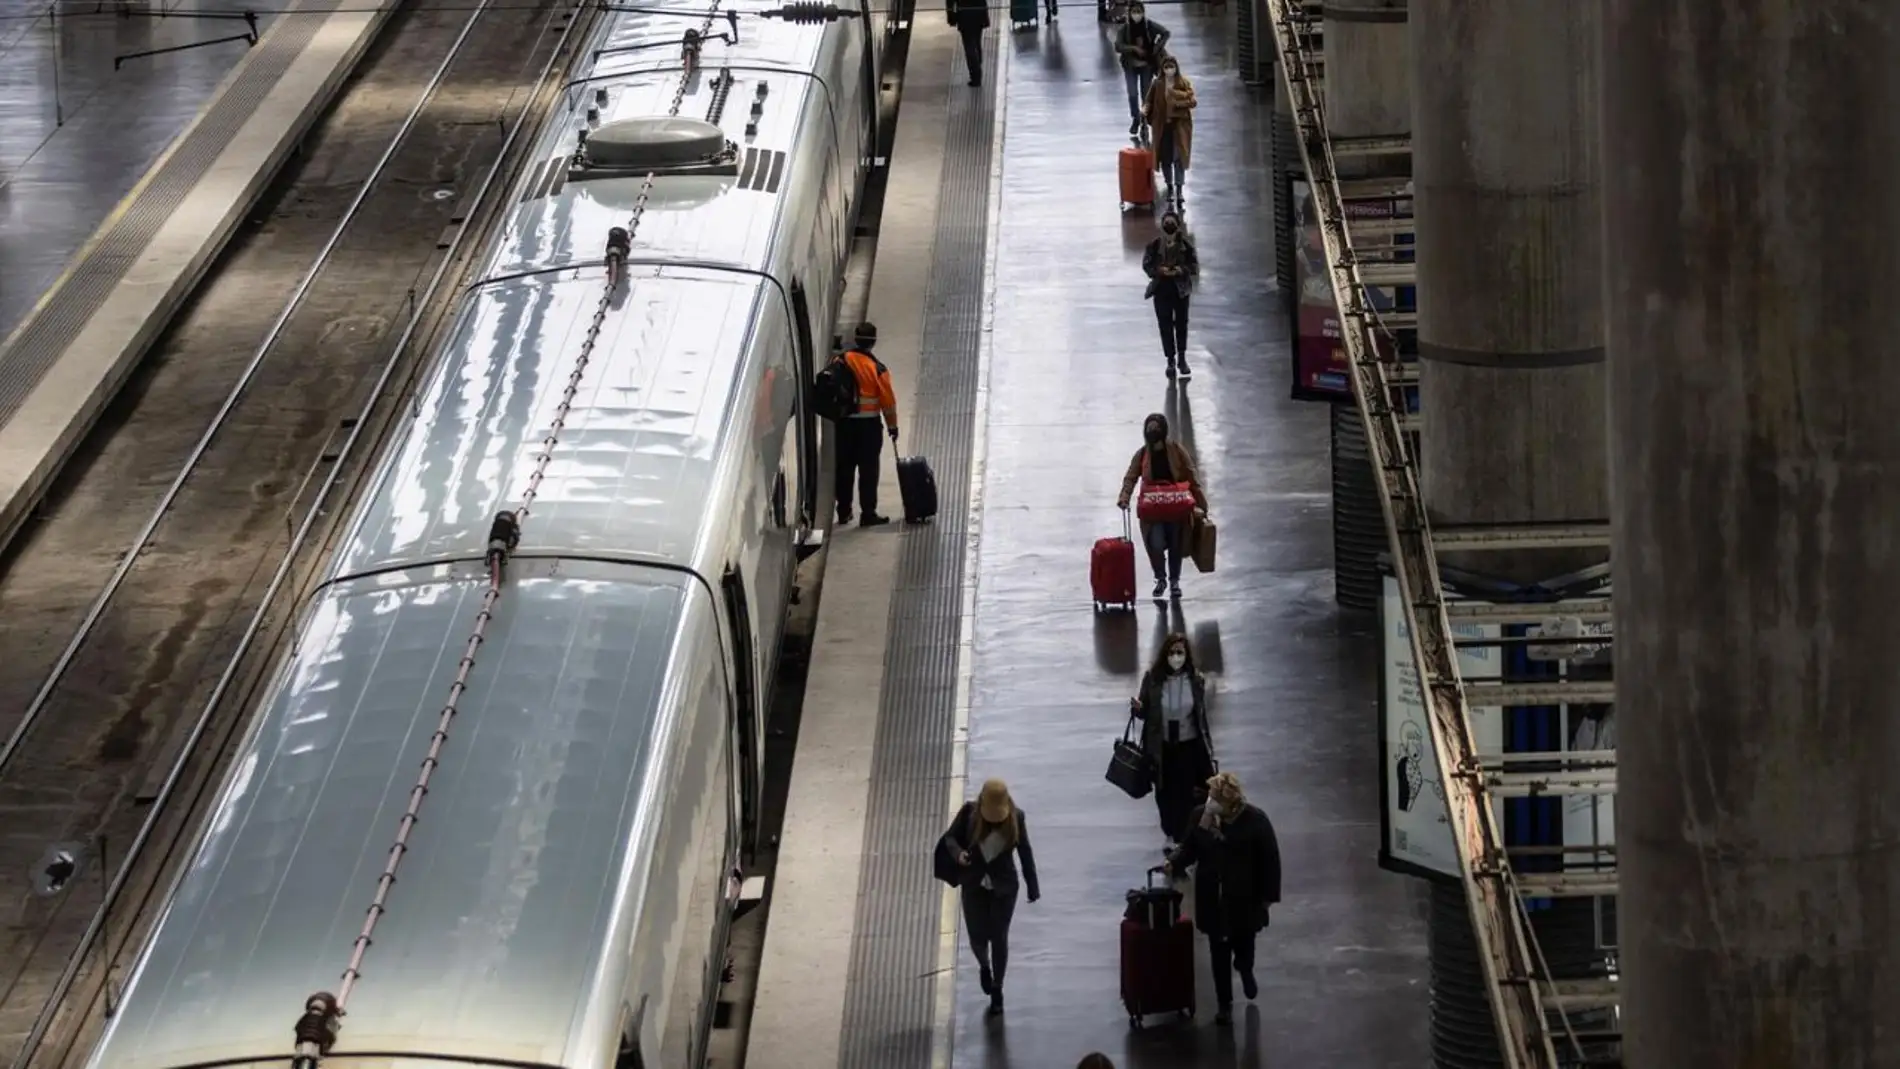 Tren gratis en España: estos son los tipos de abonos y viajes que quedan excluidos de la ayuda